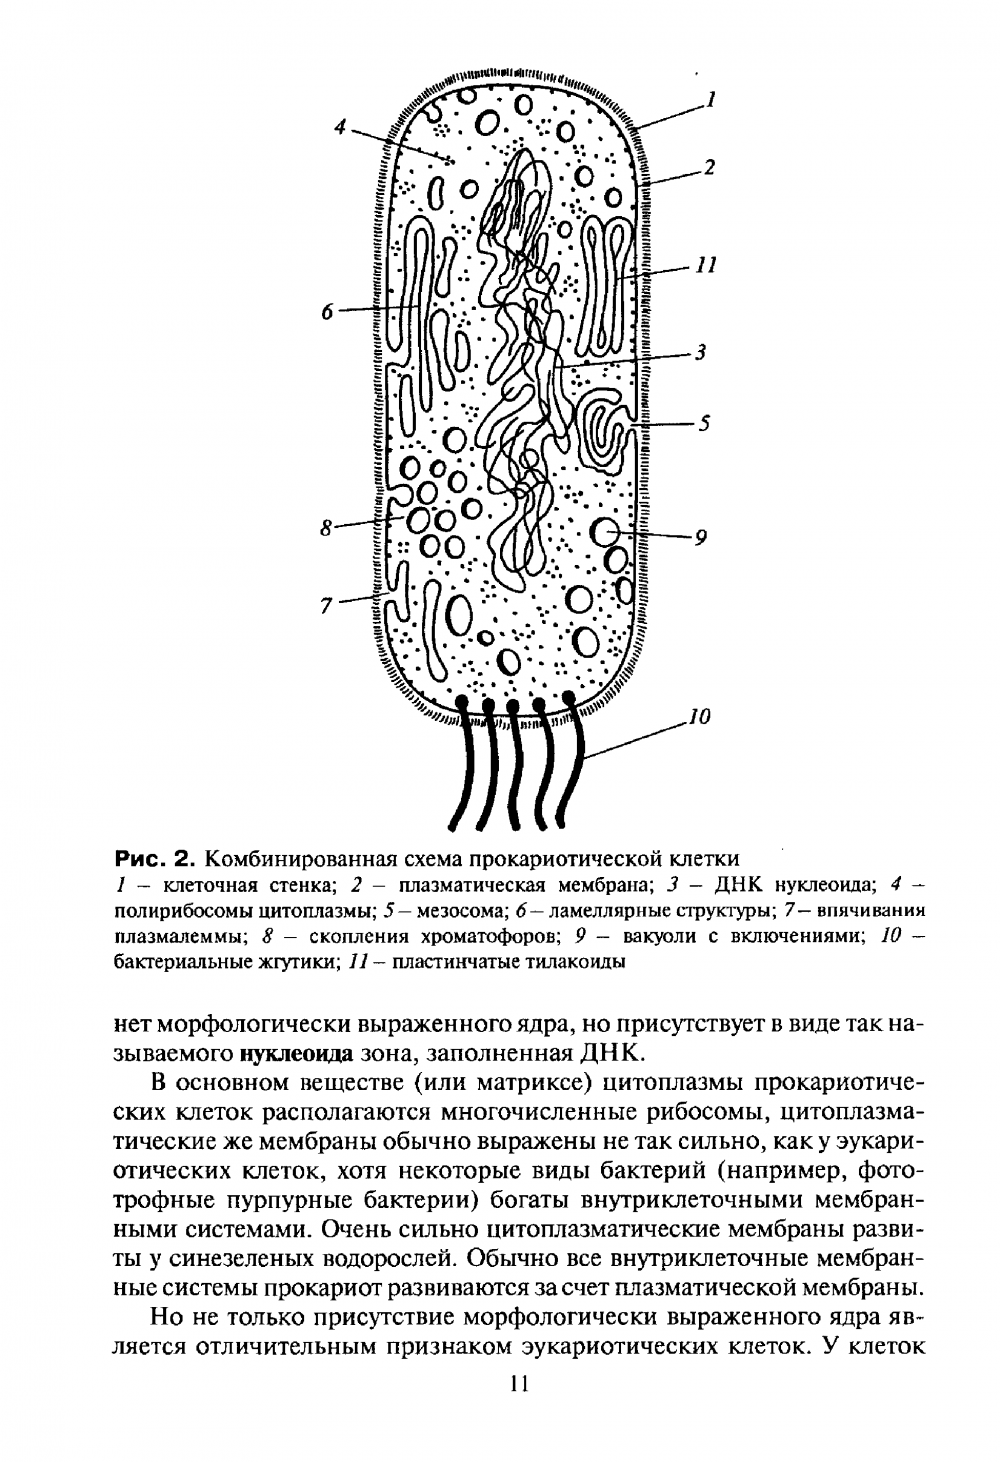 Схема строения прокариотической клетки